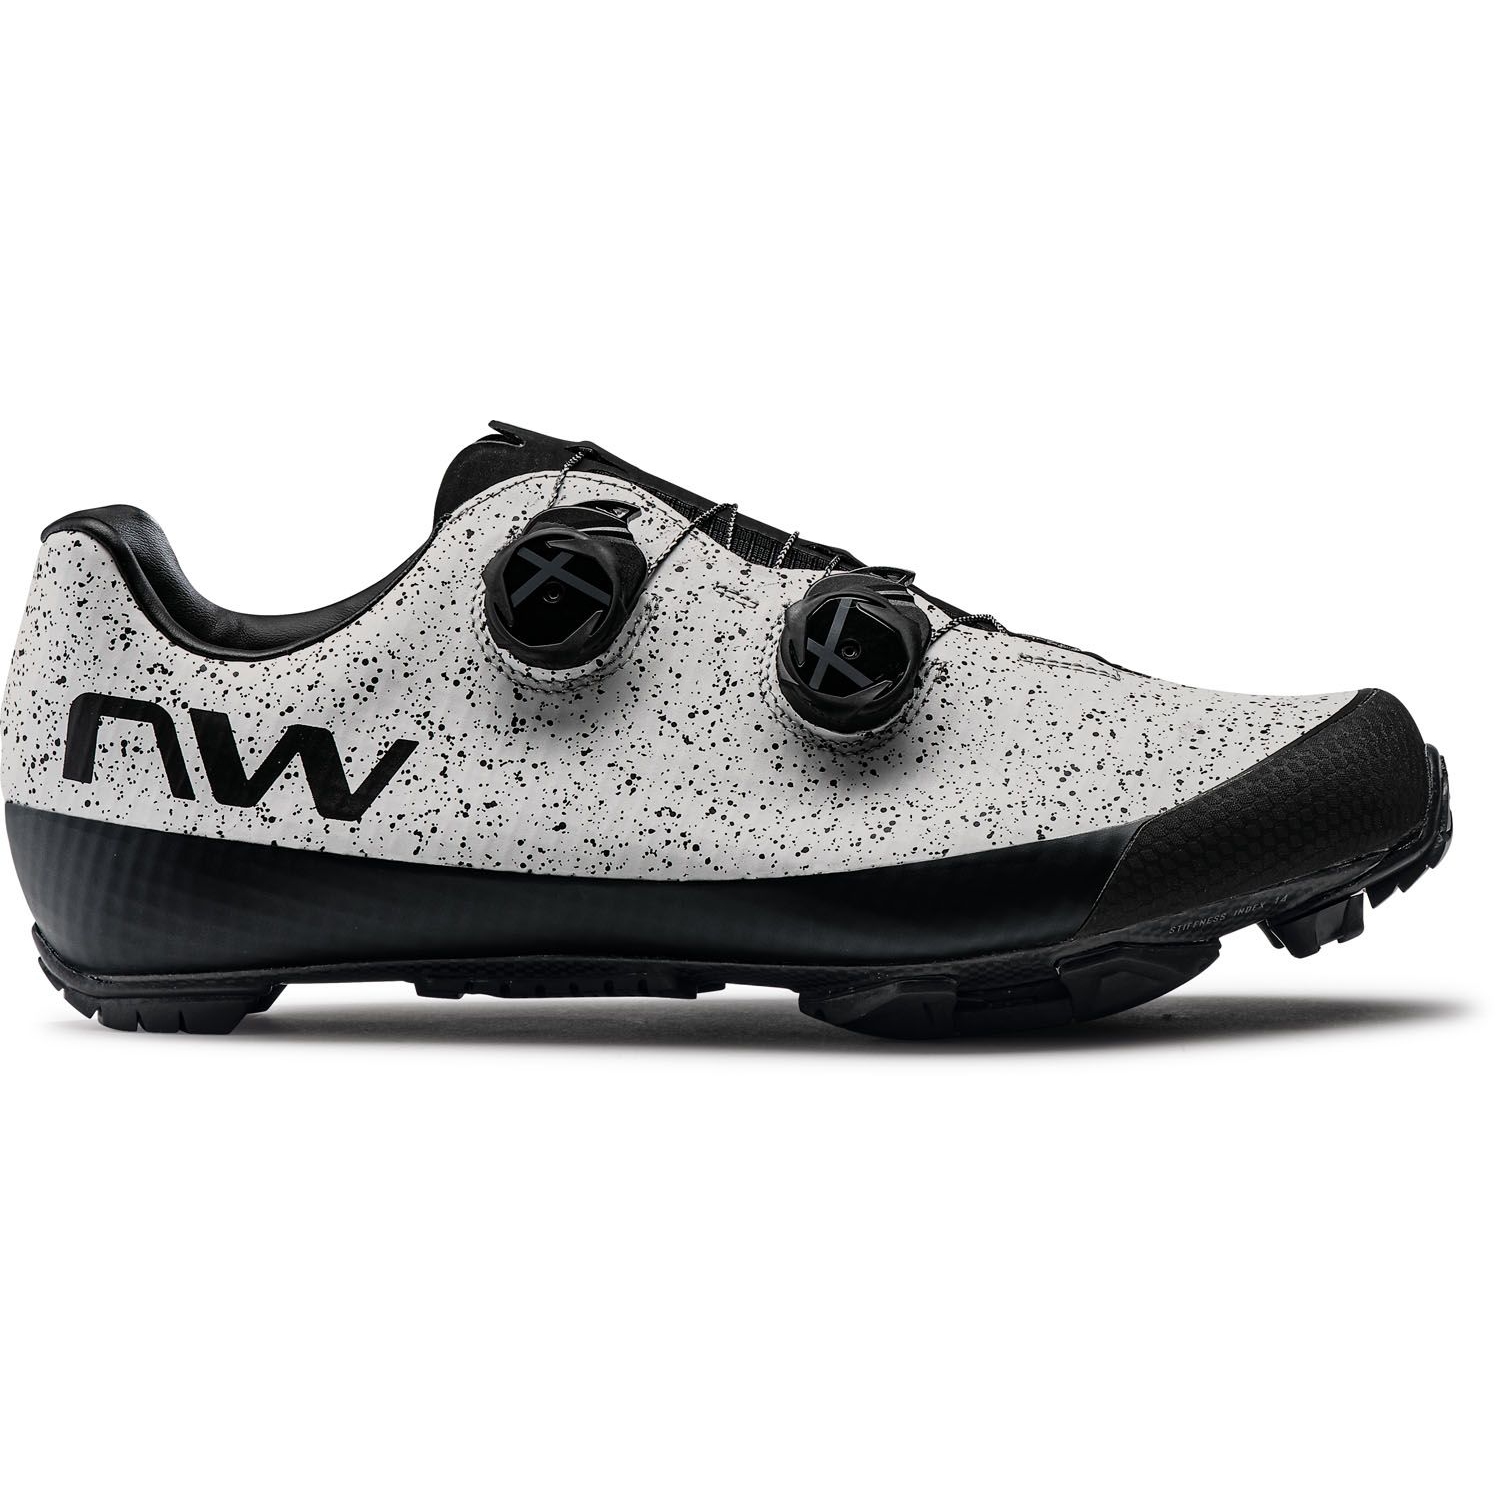 Produktbild von Northwave Extreme XC 2 MTB Schuhe - hellgrau 87